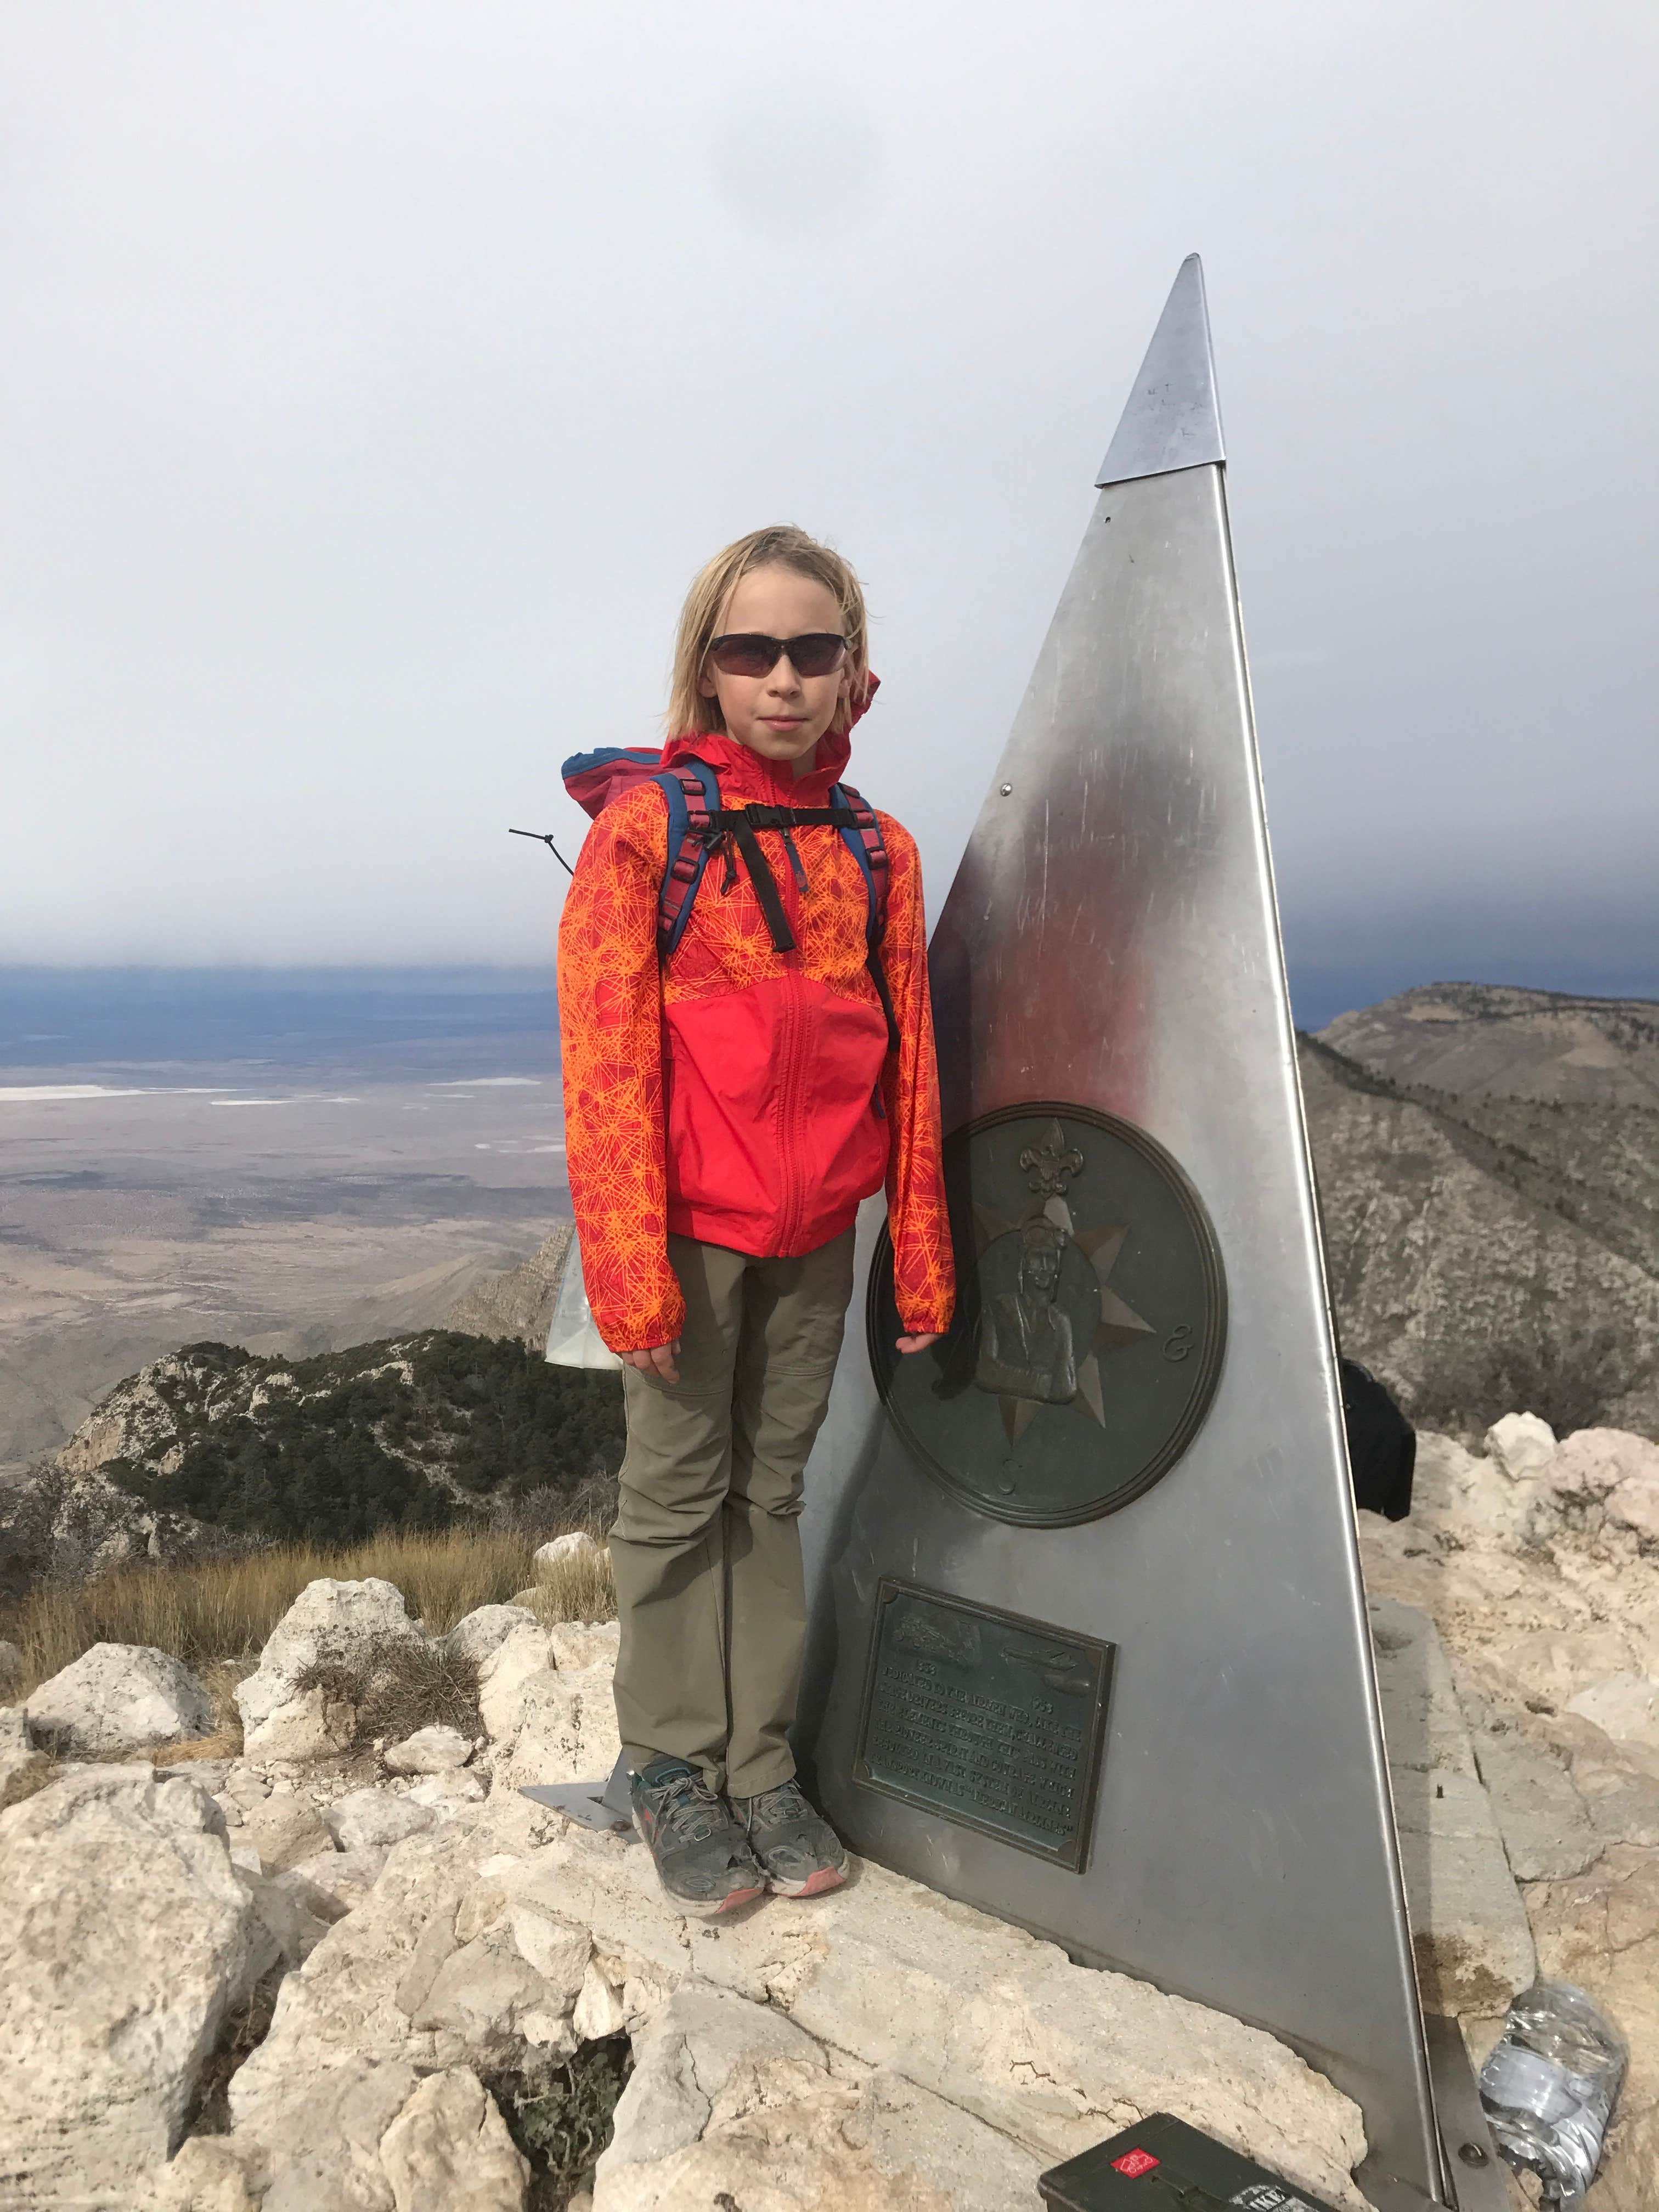 Atop Guadalupe Peak